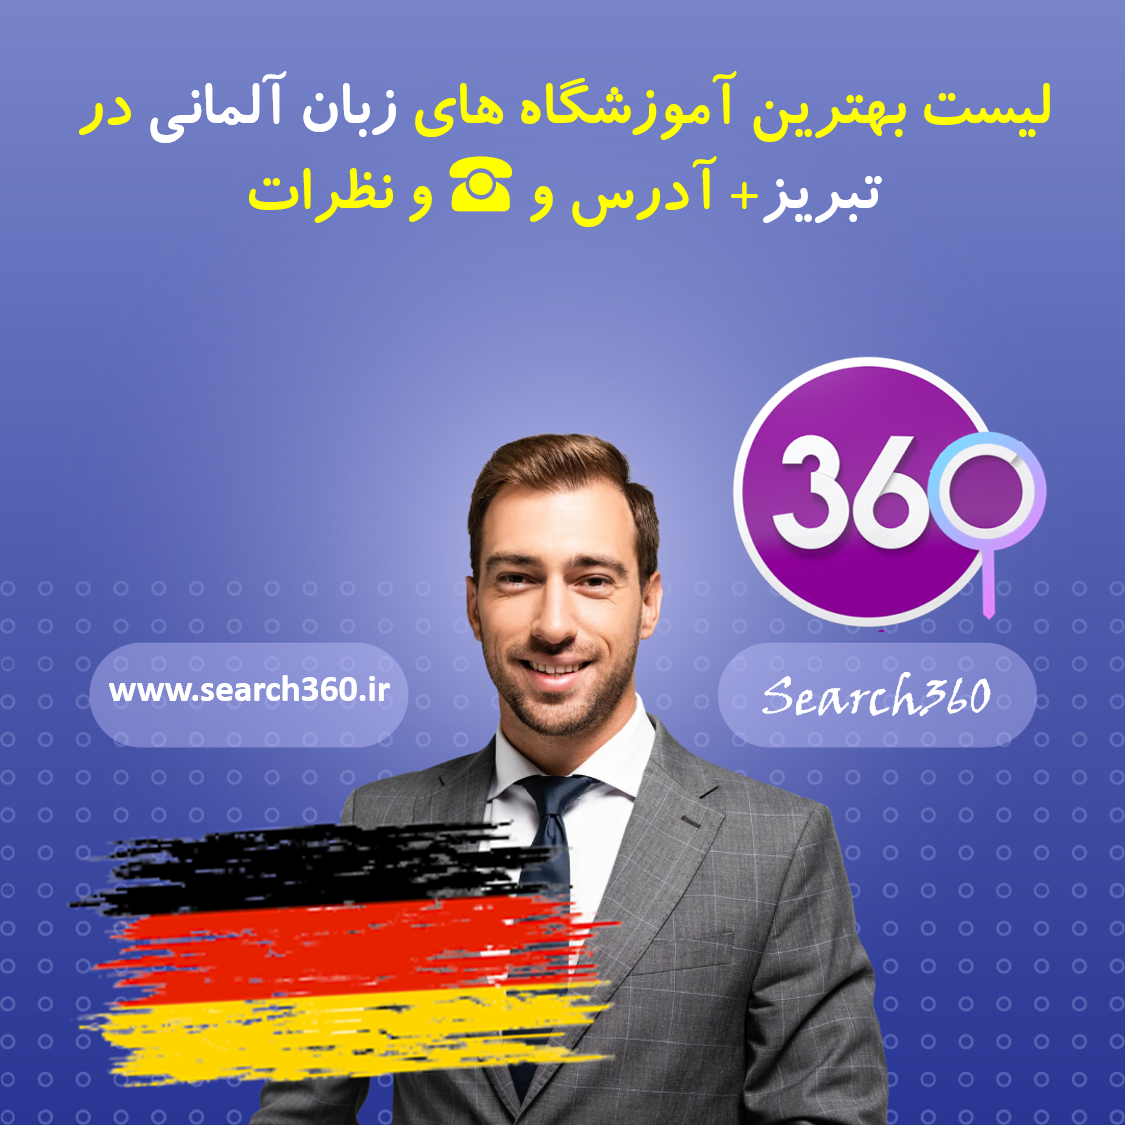 بهترین آموزشگاه آلمانی در تبریز با آدرس و تلفن ☎️ و نظرات